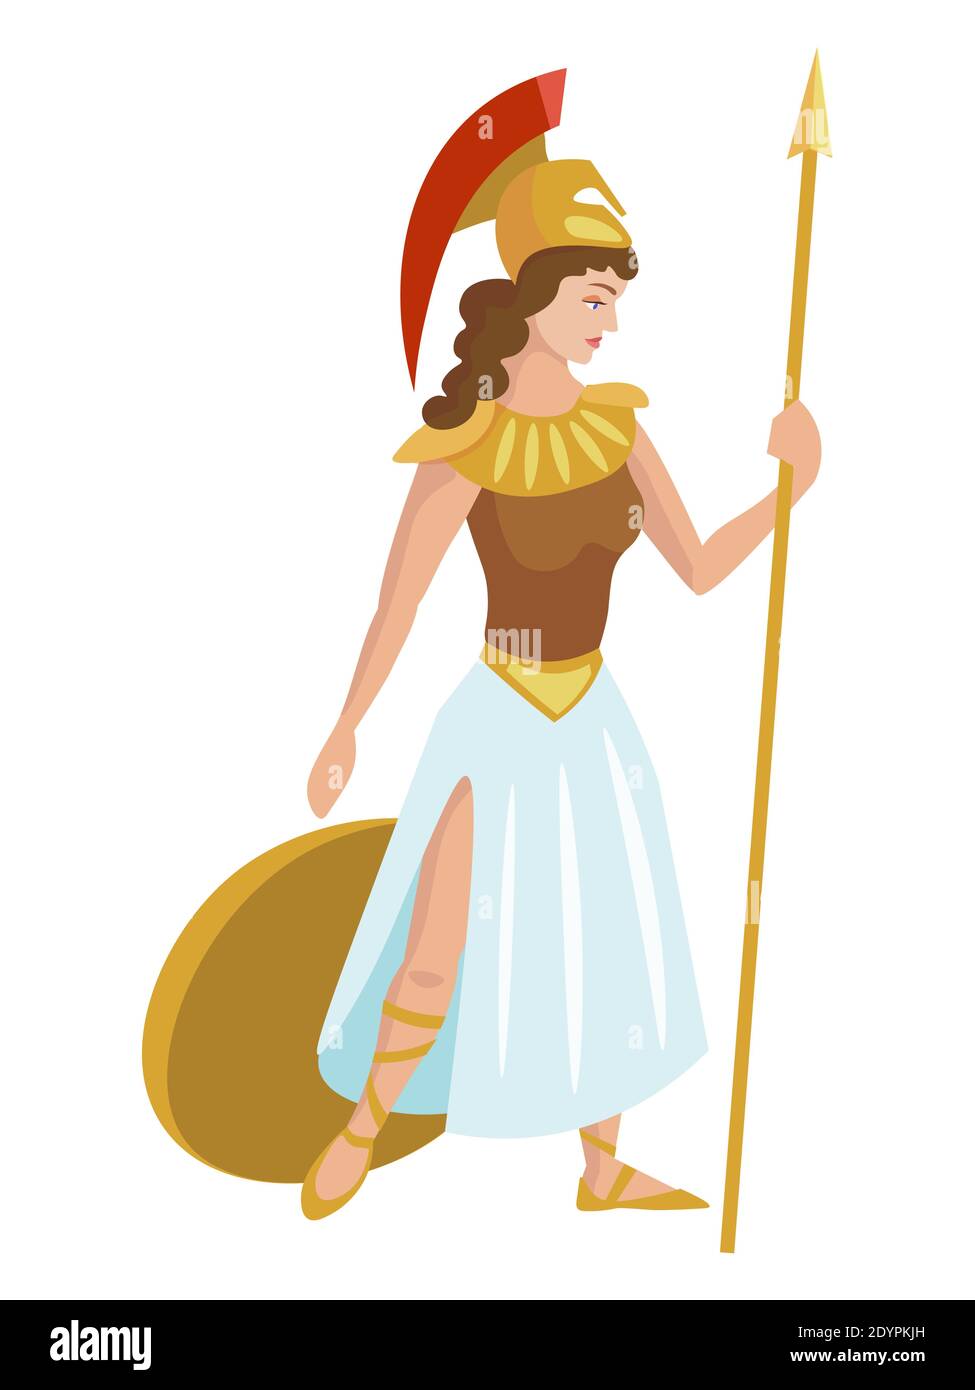 Atenea diosa griega dibujo fotografías e imágenes de alta resolución - Alamy